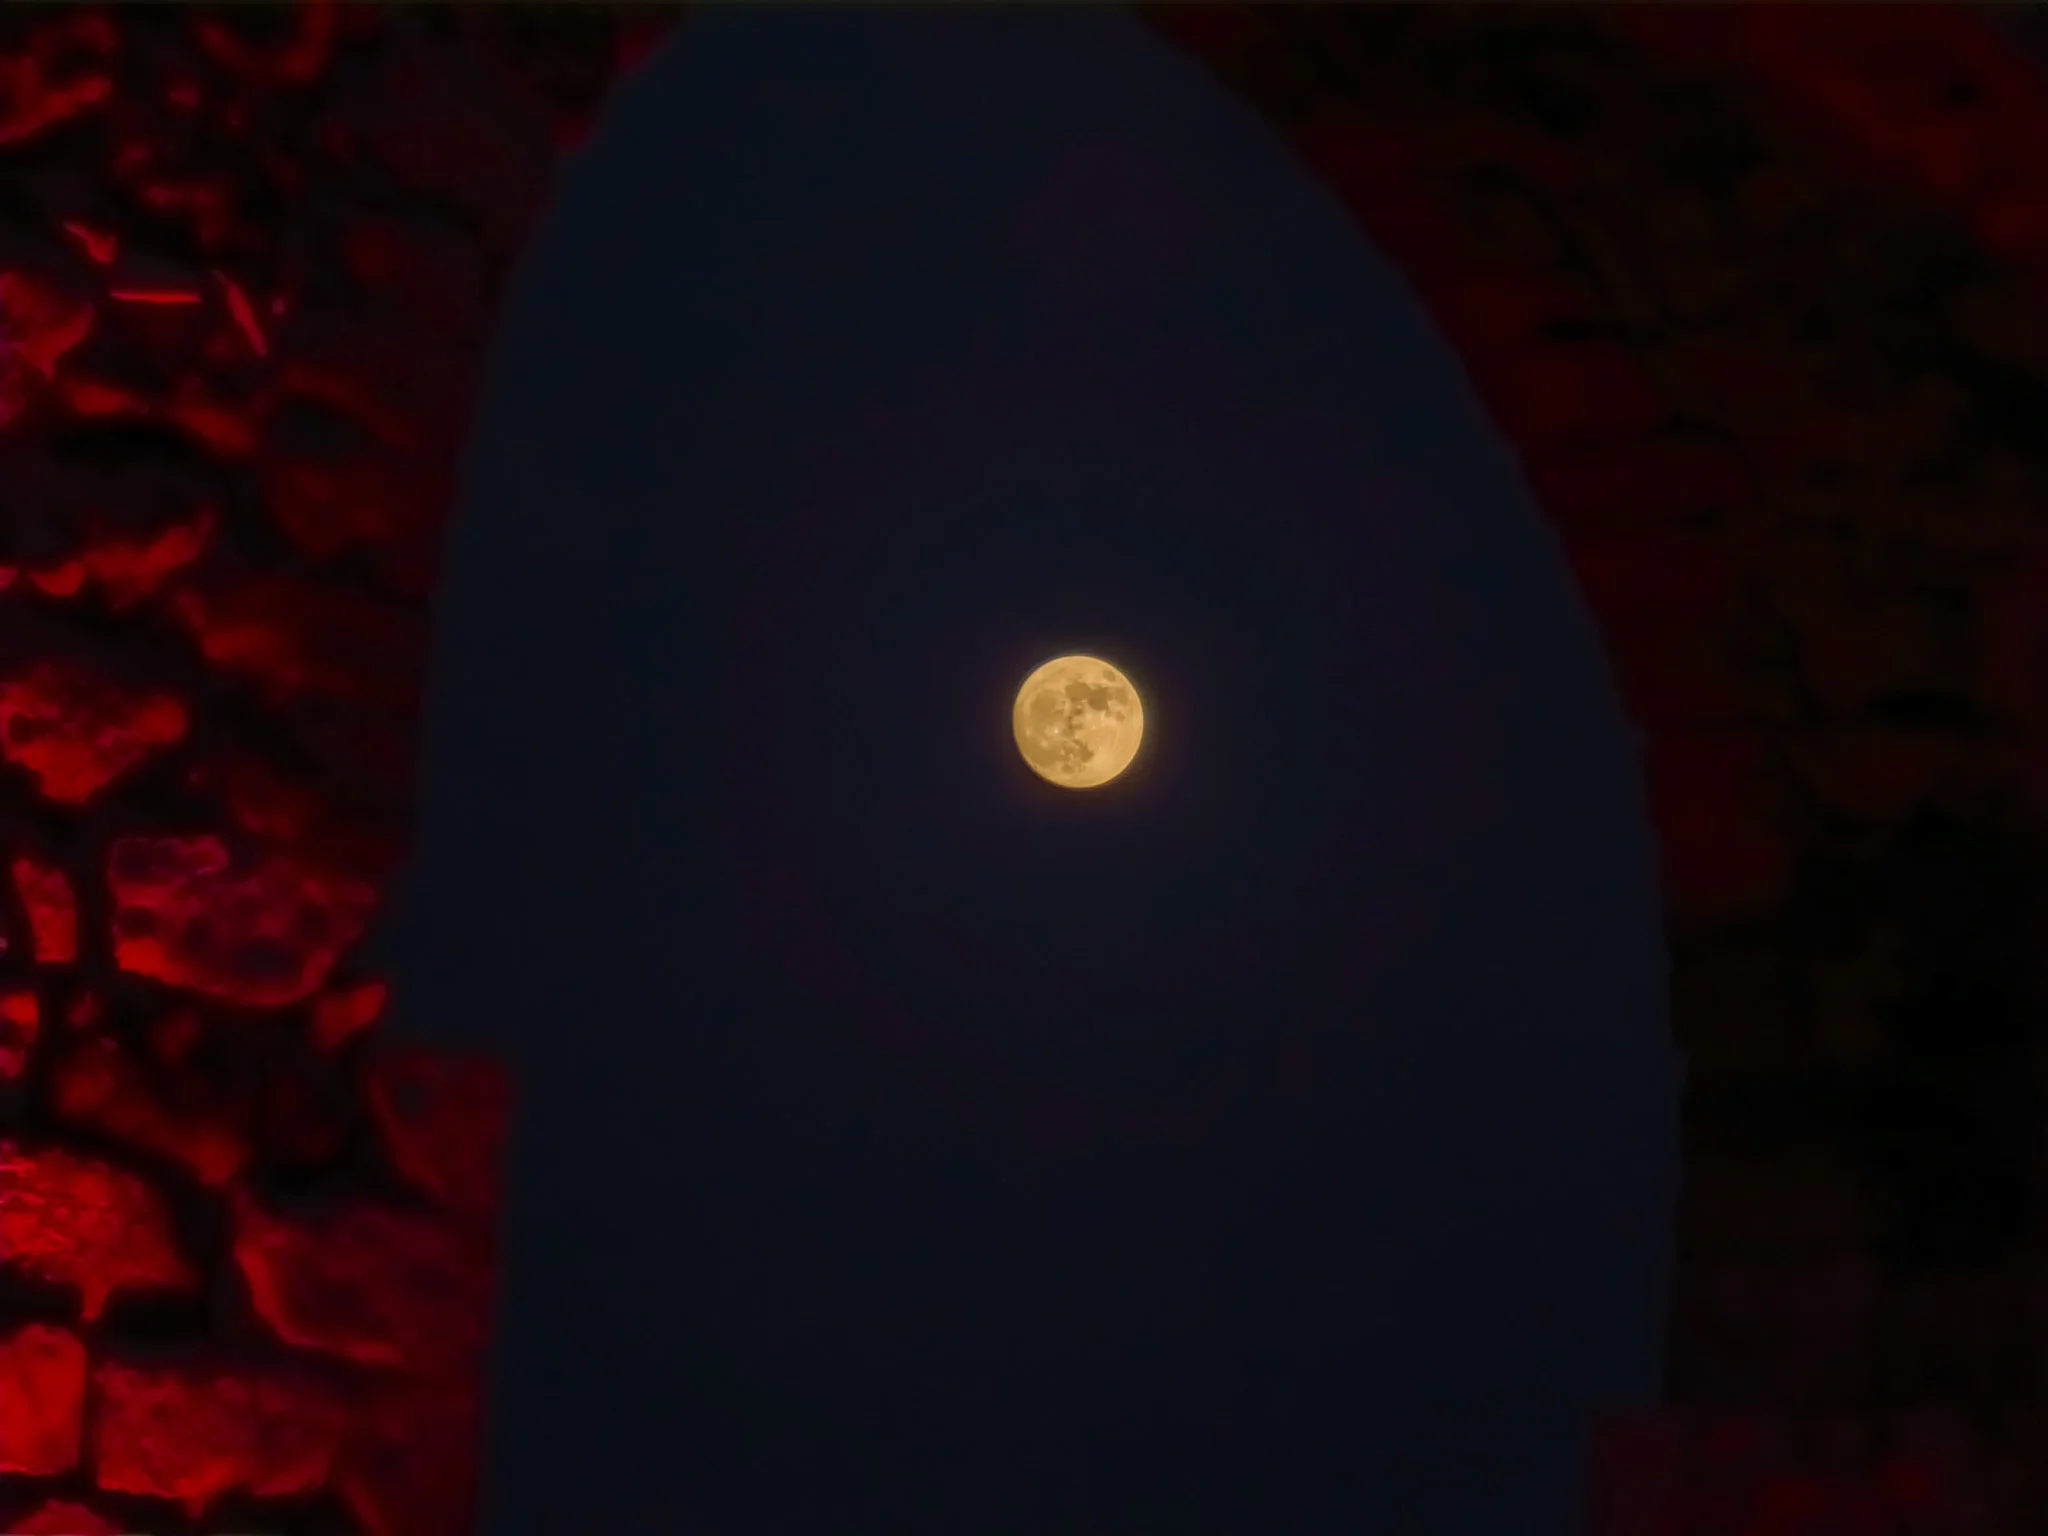 הירח מופיע במרכזו בשמי הלילה דרך קשת גשר של אמת מים עתיקה בקיבוץ לוחמי הגטאות, כאשר אבני הקשת זוהרות באדום.